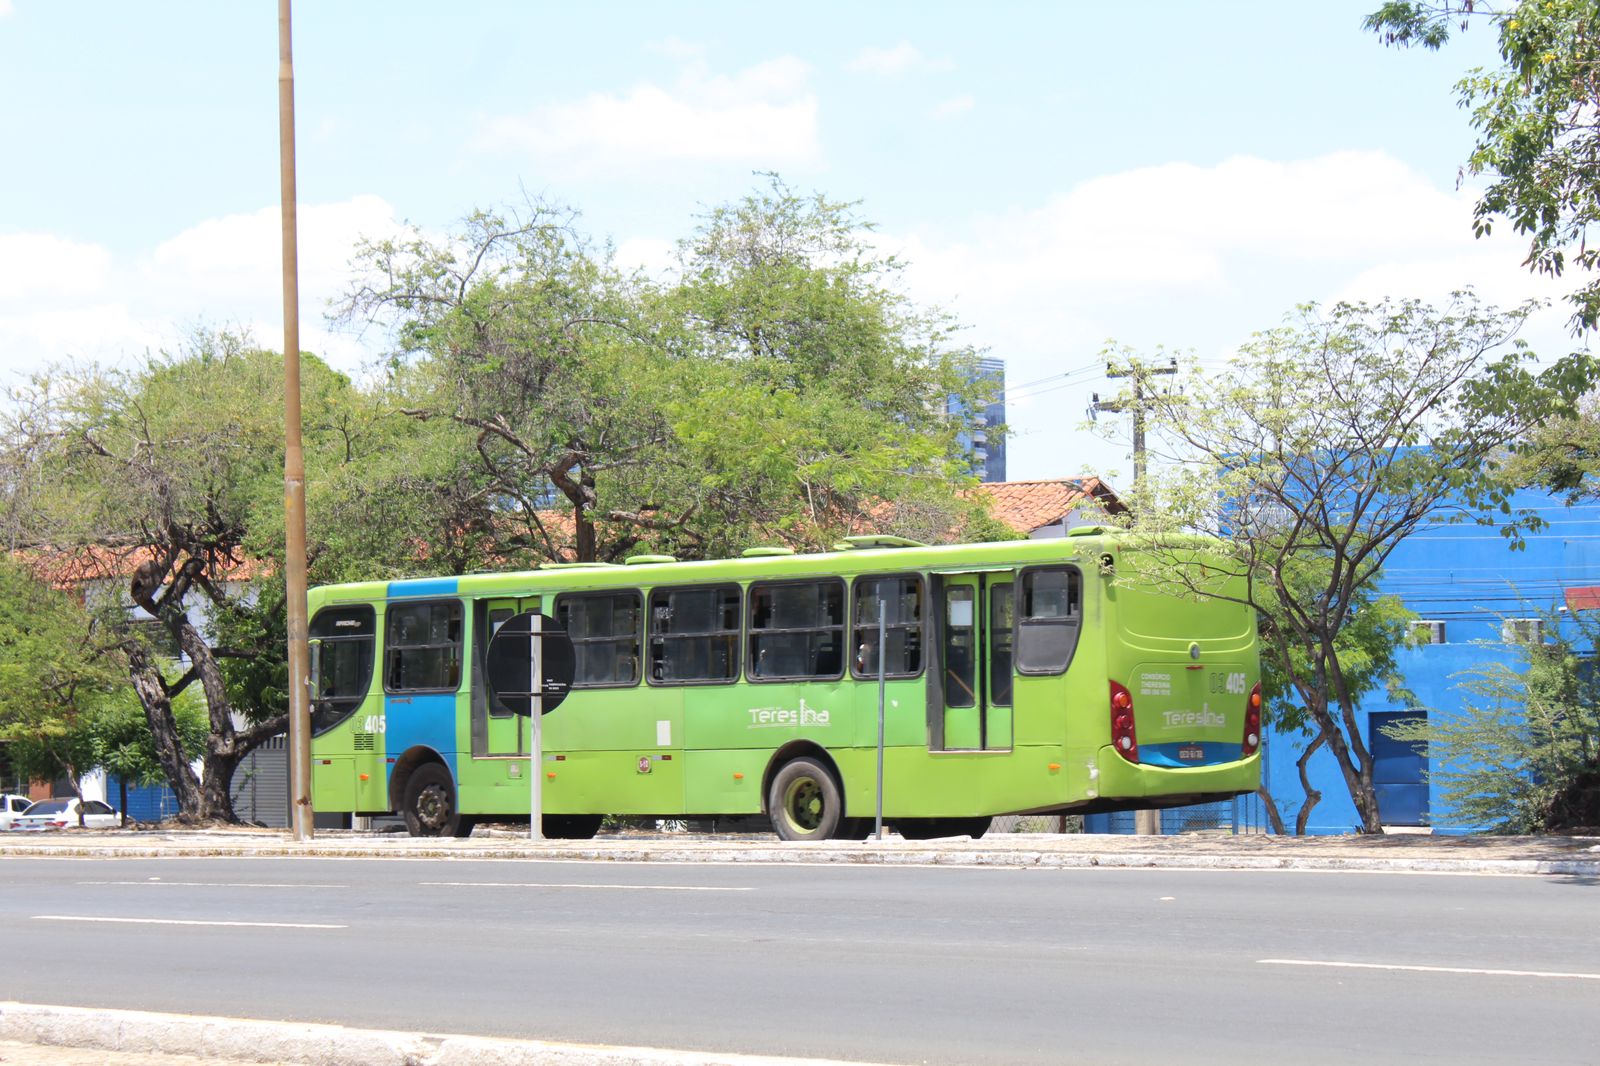 Eleitores reclamam da demora dos ônibus em Teresina (Foto: Raissa Morais)Eleitores reclamam da demora dos ônibus em Teresina (Foto: Raissa Morais)